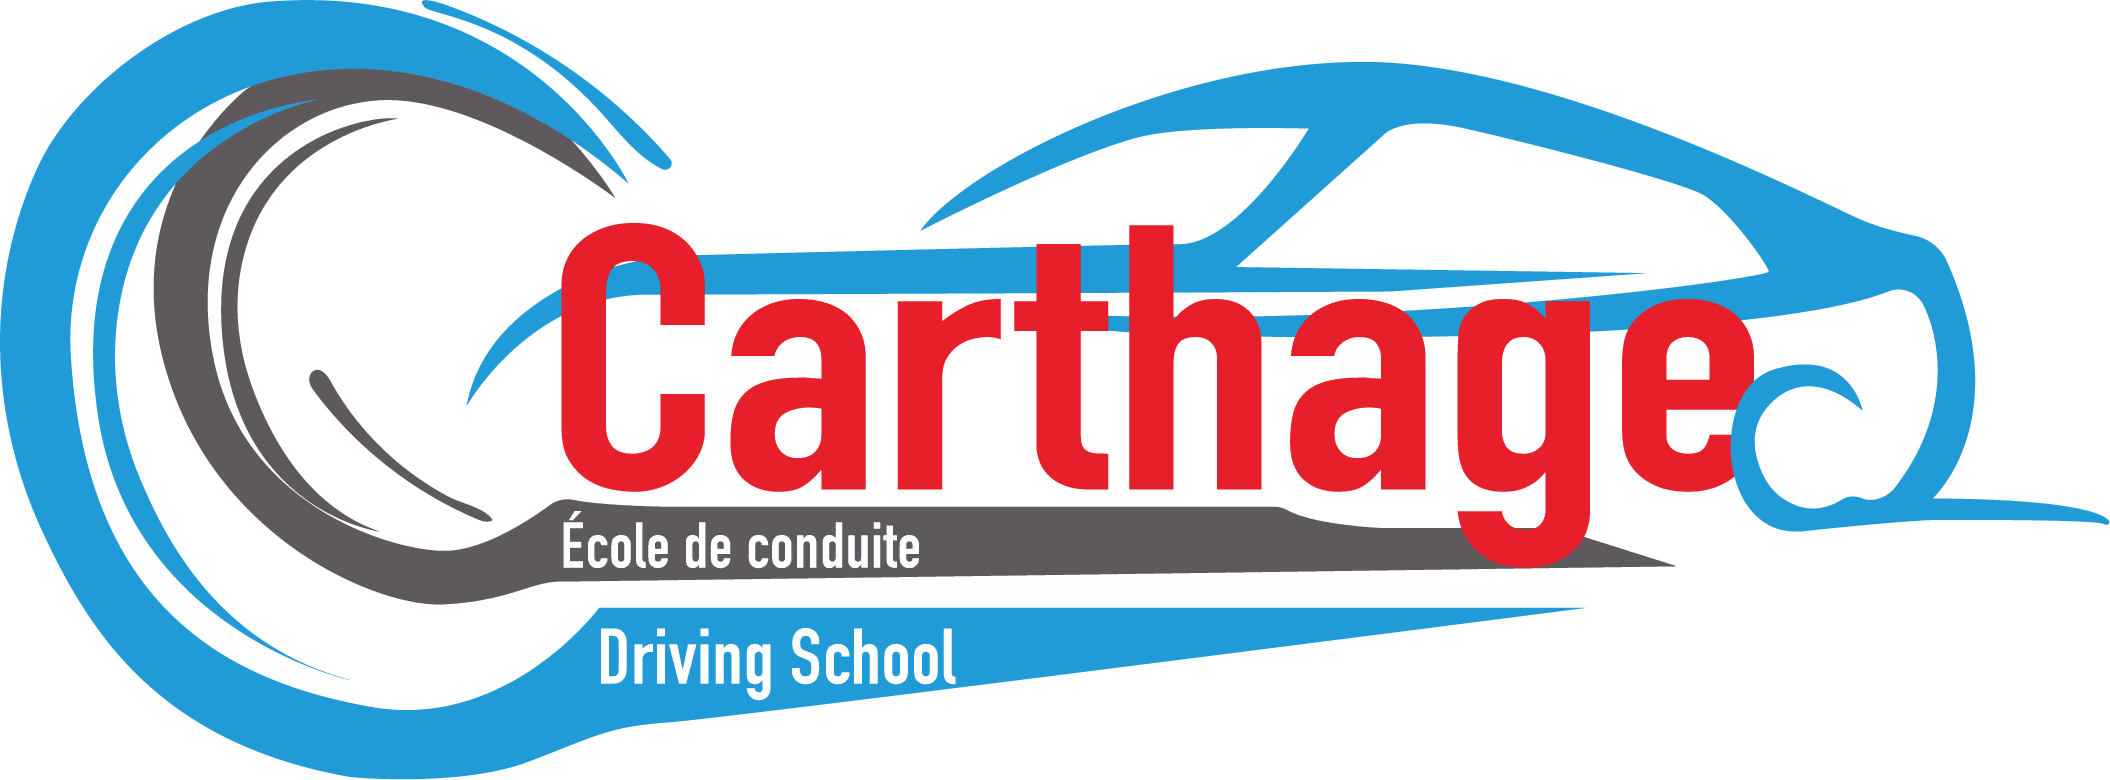 École de conduite Carthage Saint-Hubert, Logo